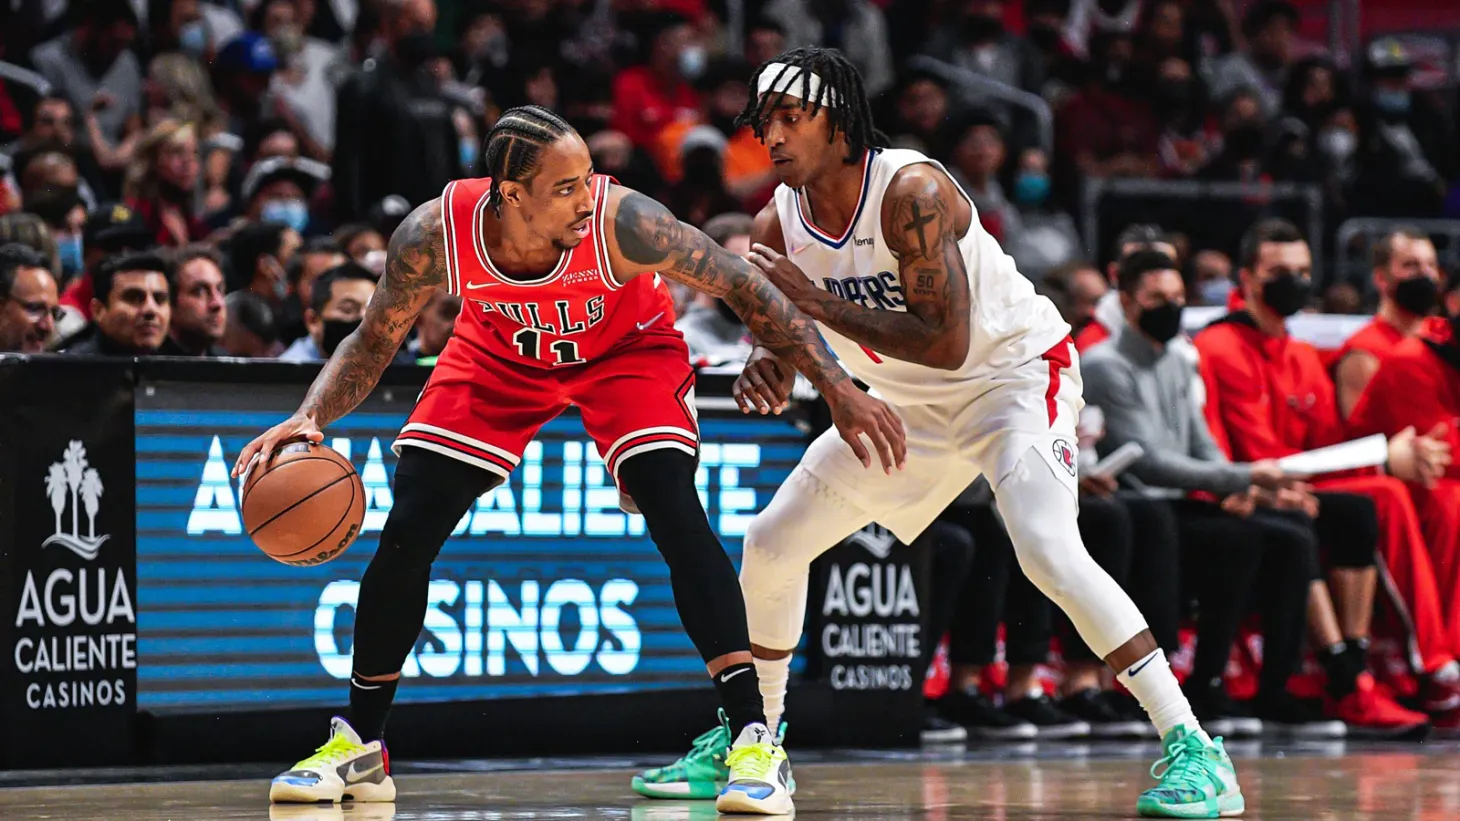 DeRozan, LaVine in double digits, Bulls end Clippers' streak